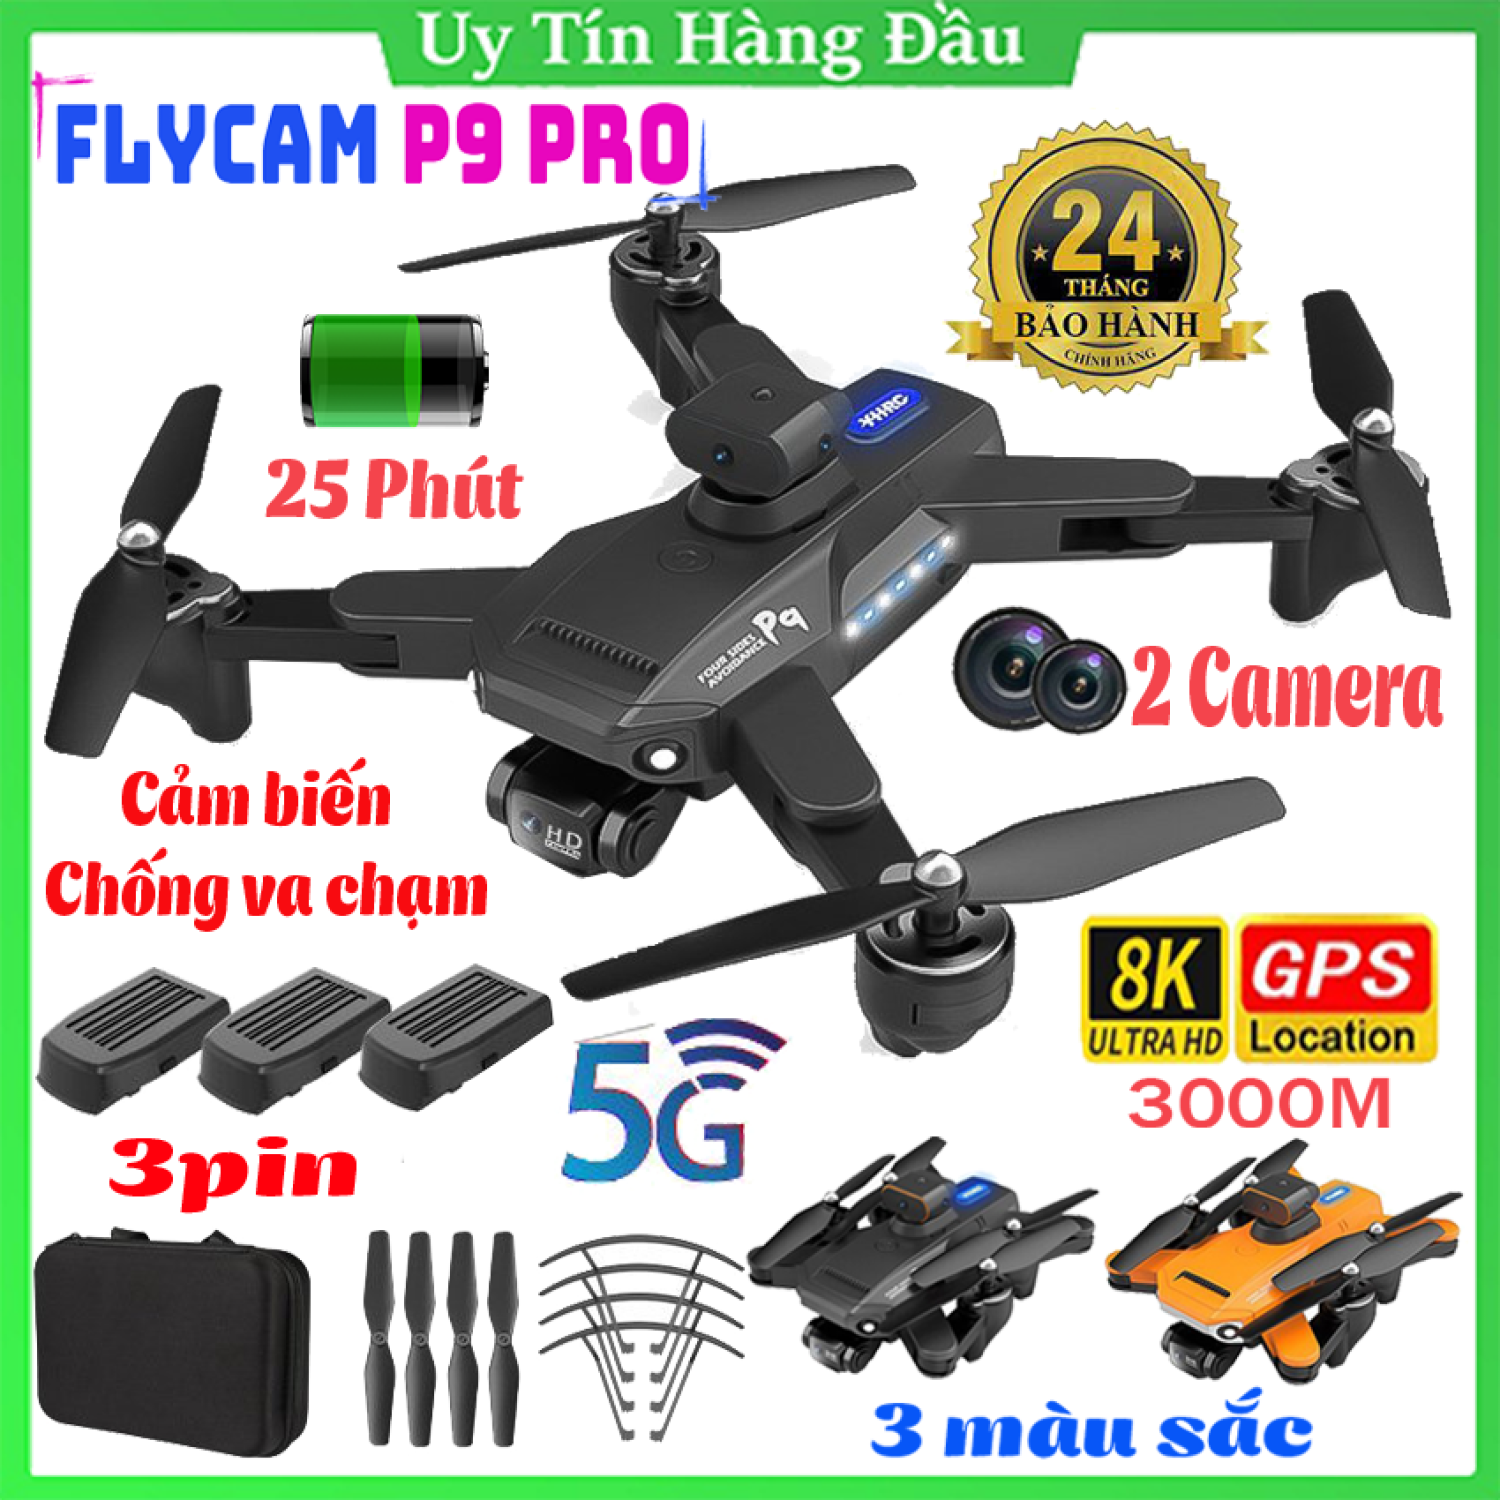 Máy bay điều khiển từ xa Flycam P9pro có camera, Flycam drone 4K P9 Pro, Flycam giá rẻ, Máy bay camera mini, Play cam mini, Fly cam 2 camera, động cơ không chổi than, cảm biến chống va chạm 360